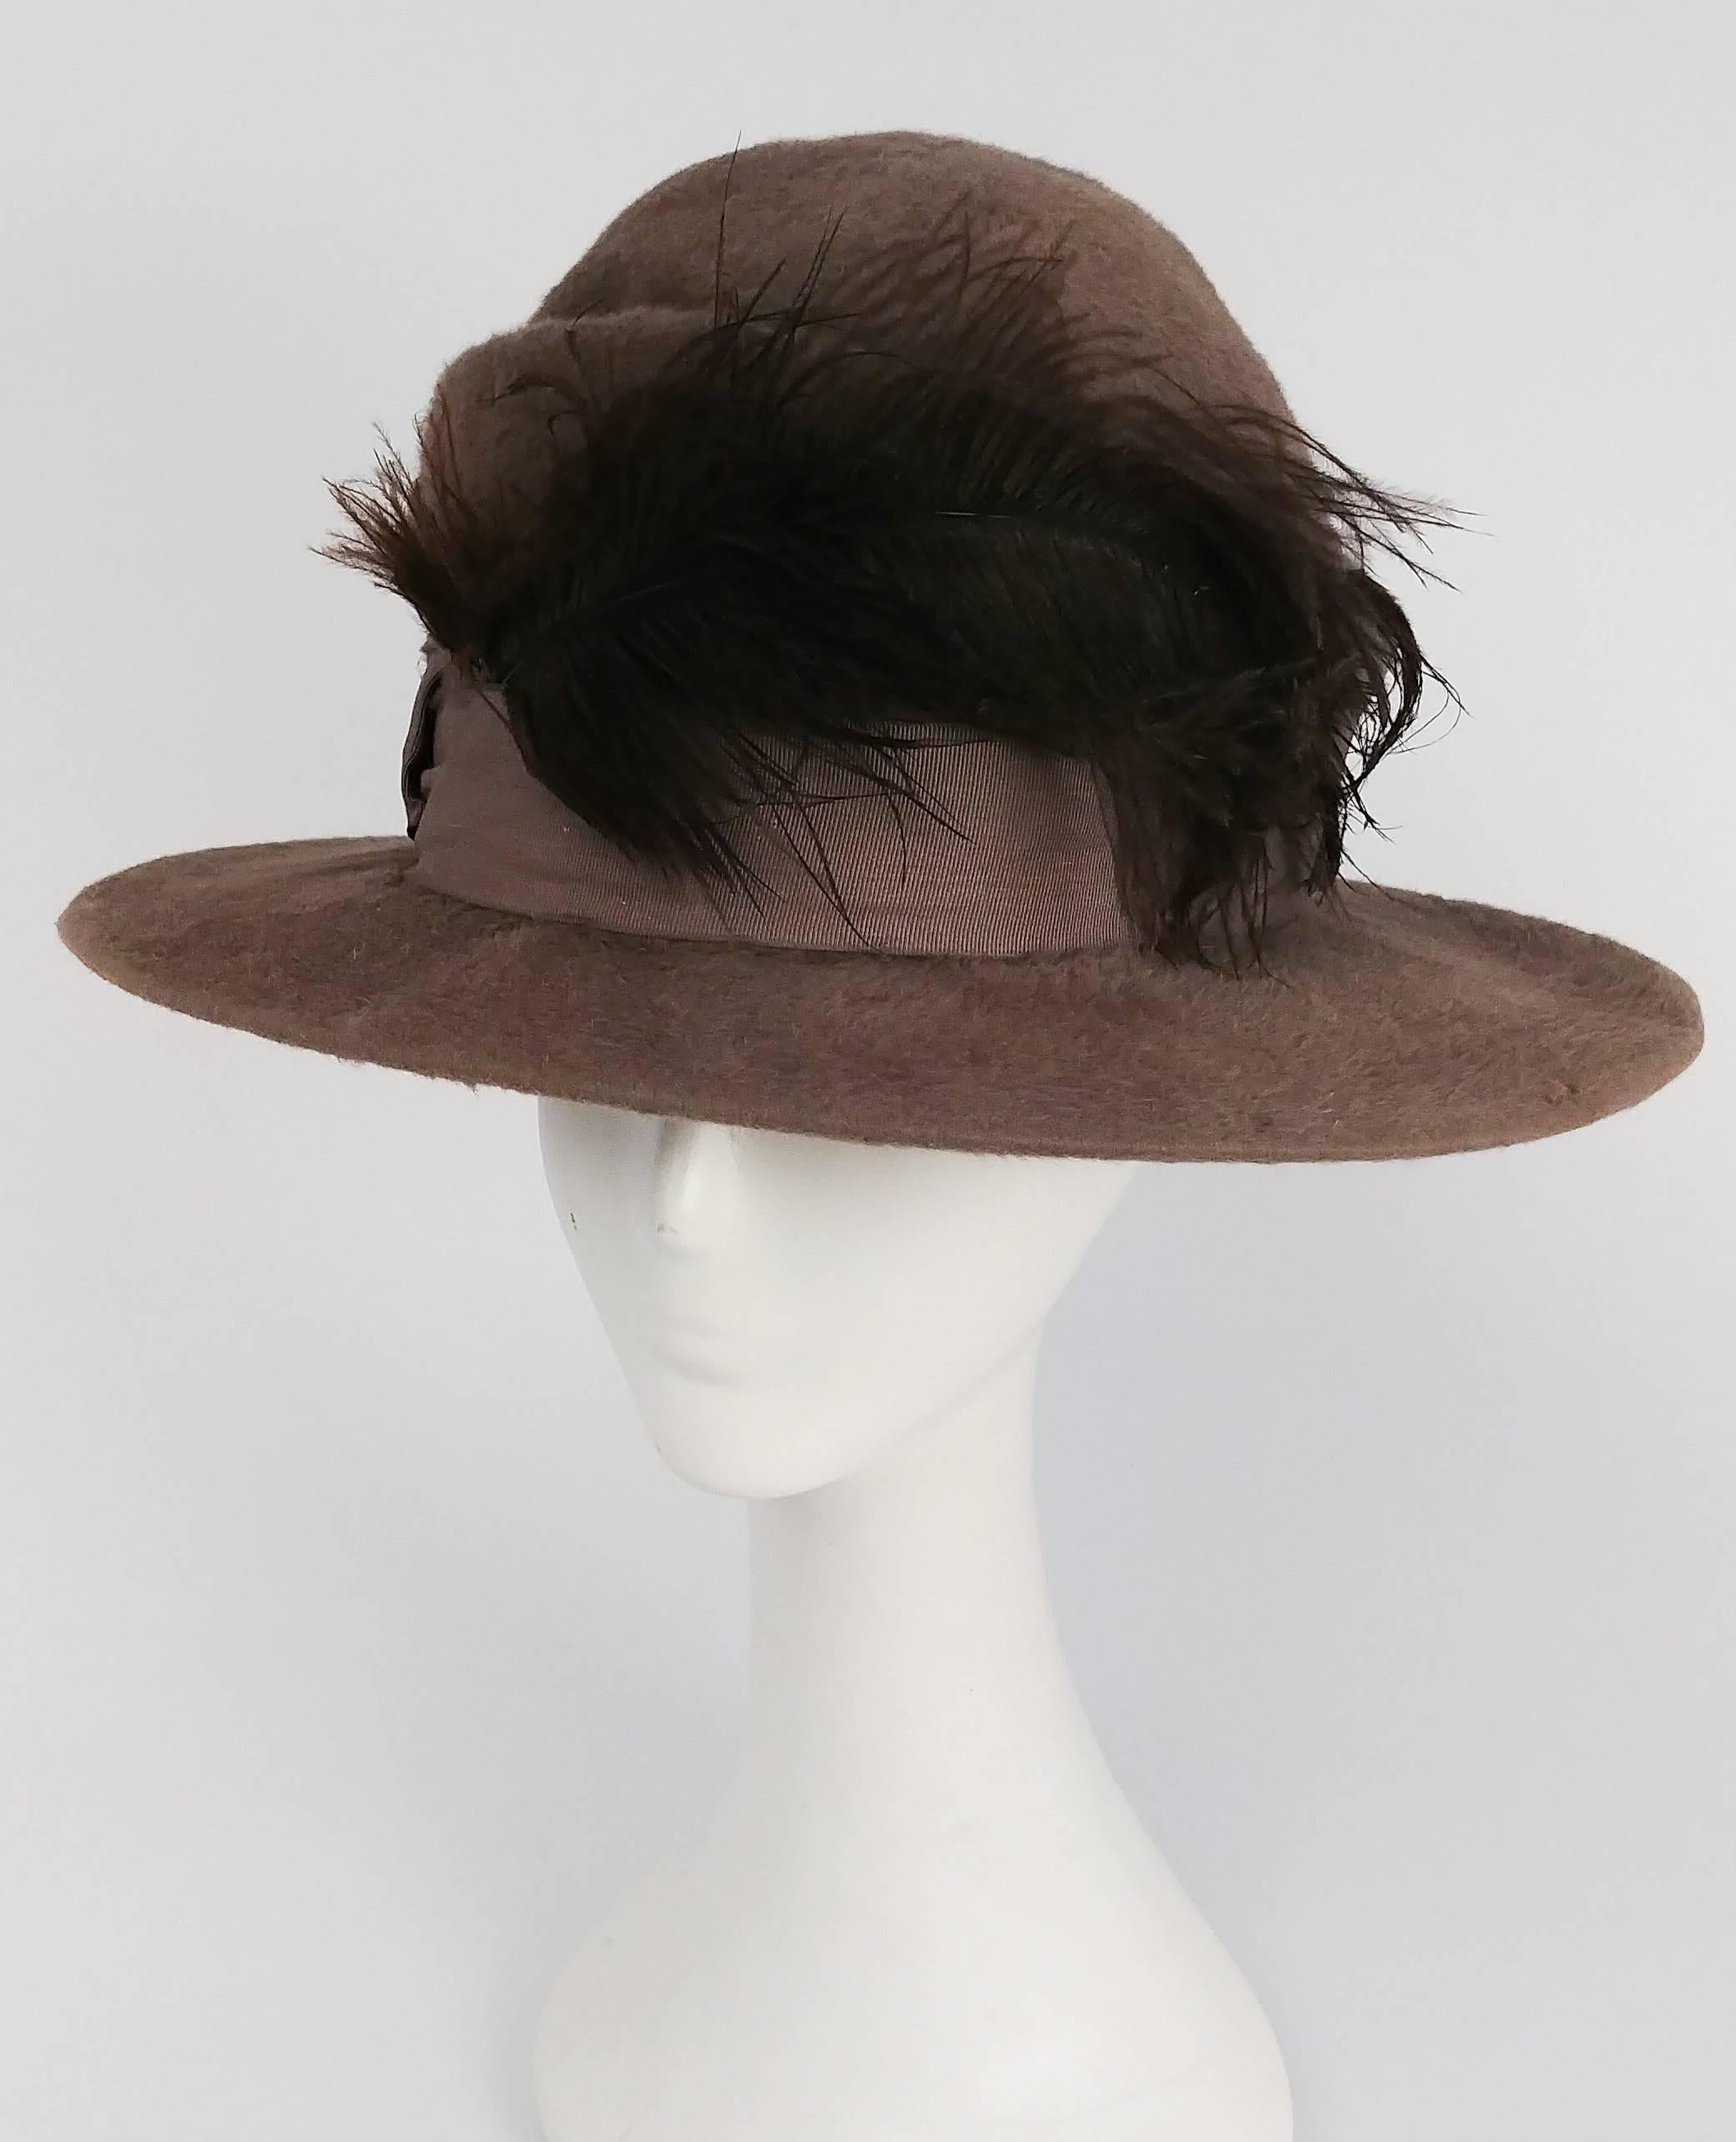 Edwardian Runde Pelz Filz Hut mit Feder. Hutband aus Grosgrain-Band (leichte Flecken auf dem Foto) mit brauner Feder und Art-Deco-Brosche. 